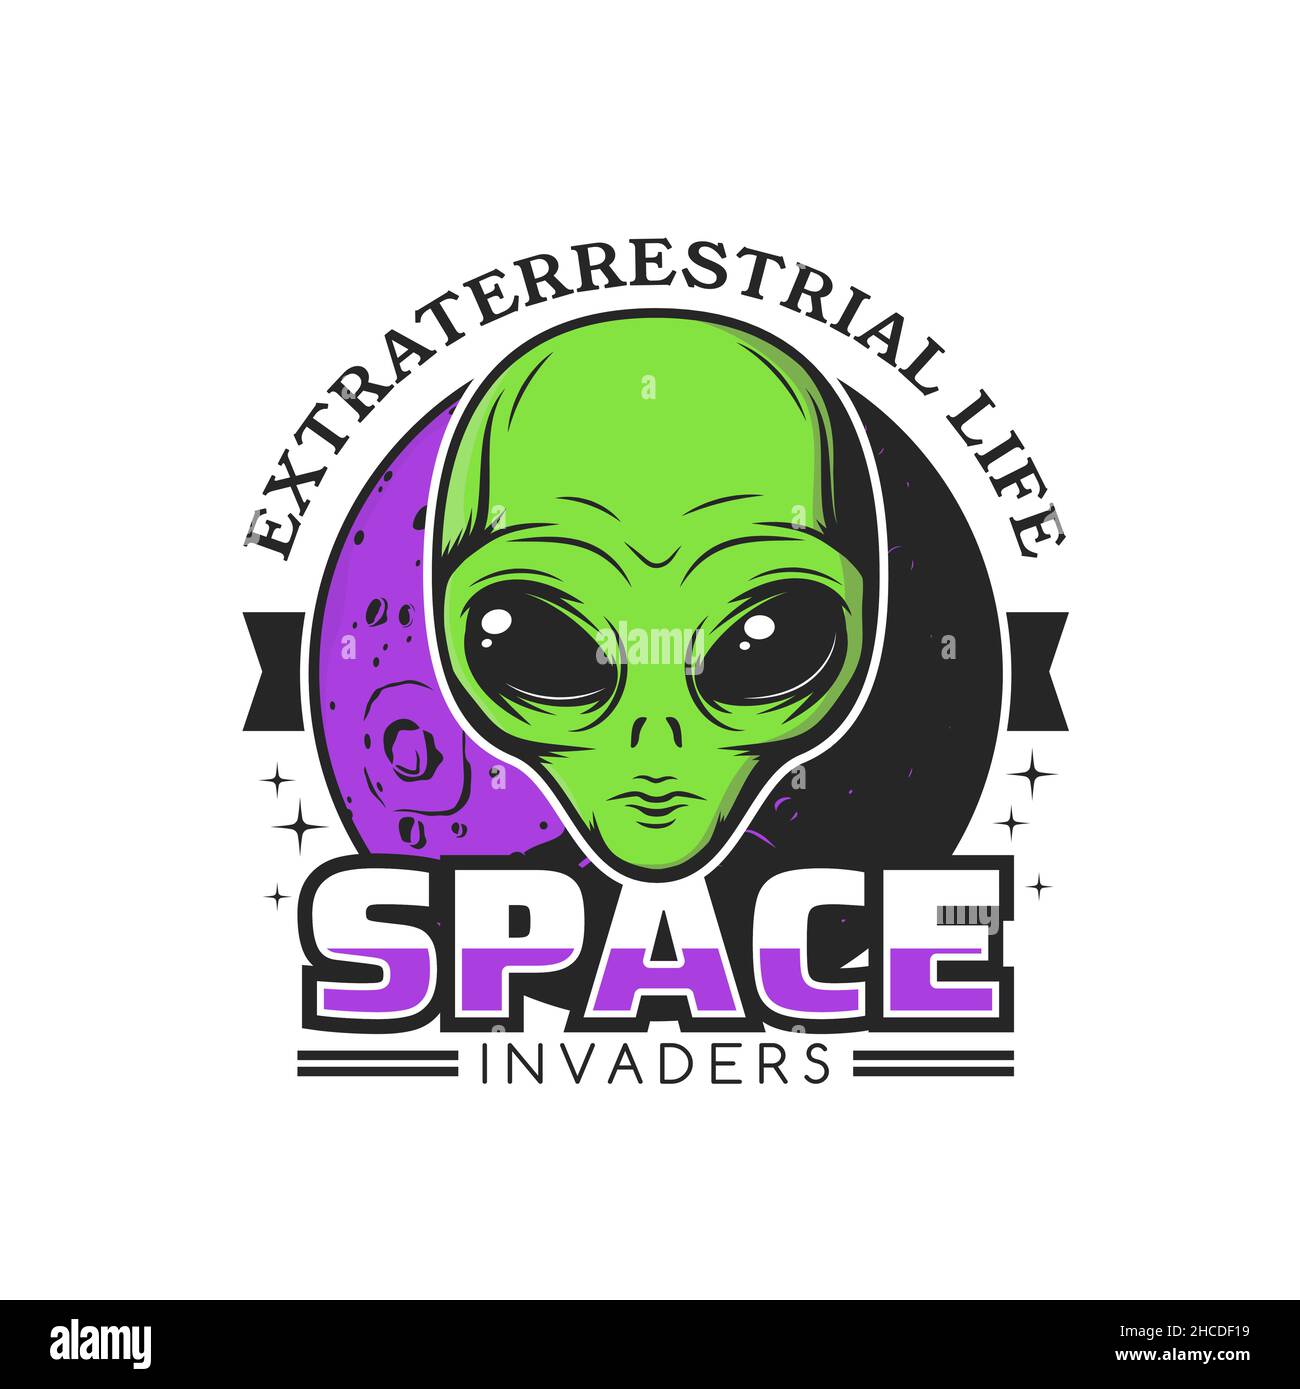 Icona Space Alien invaders. Vita extraterrestre, creatura umanoide galassia fregio vettore retro o adesivo. Alieno con volto verde e occhi grandi, spazio p Illustrazione Vettoriale